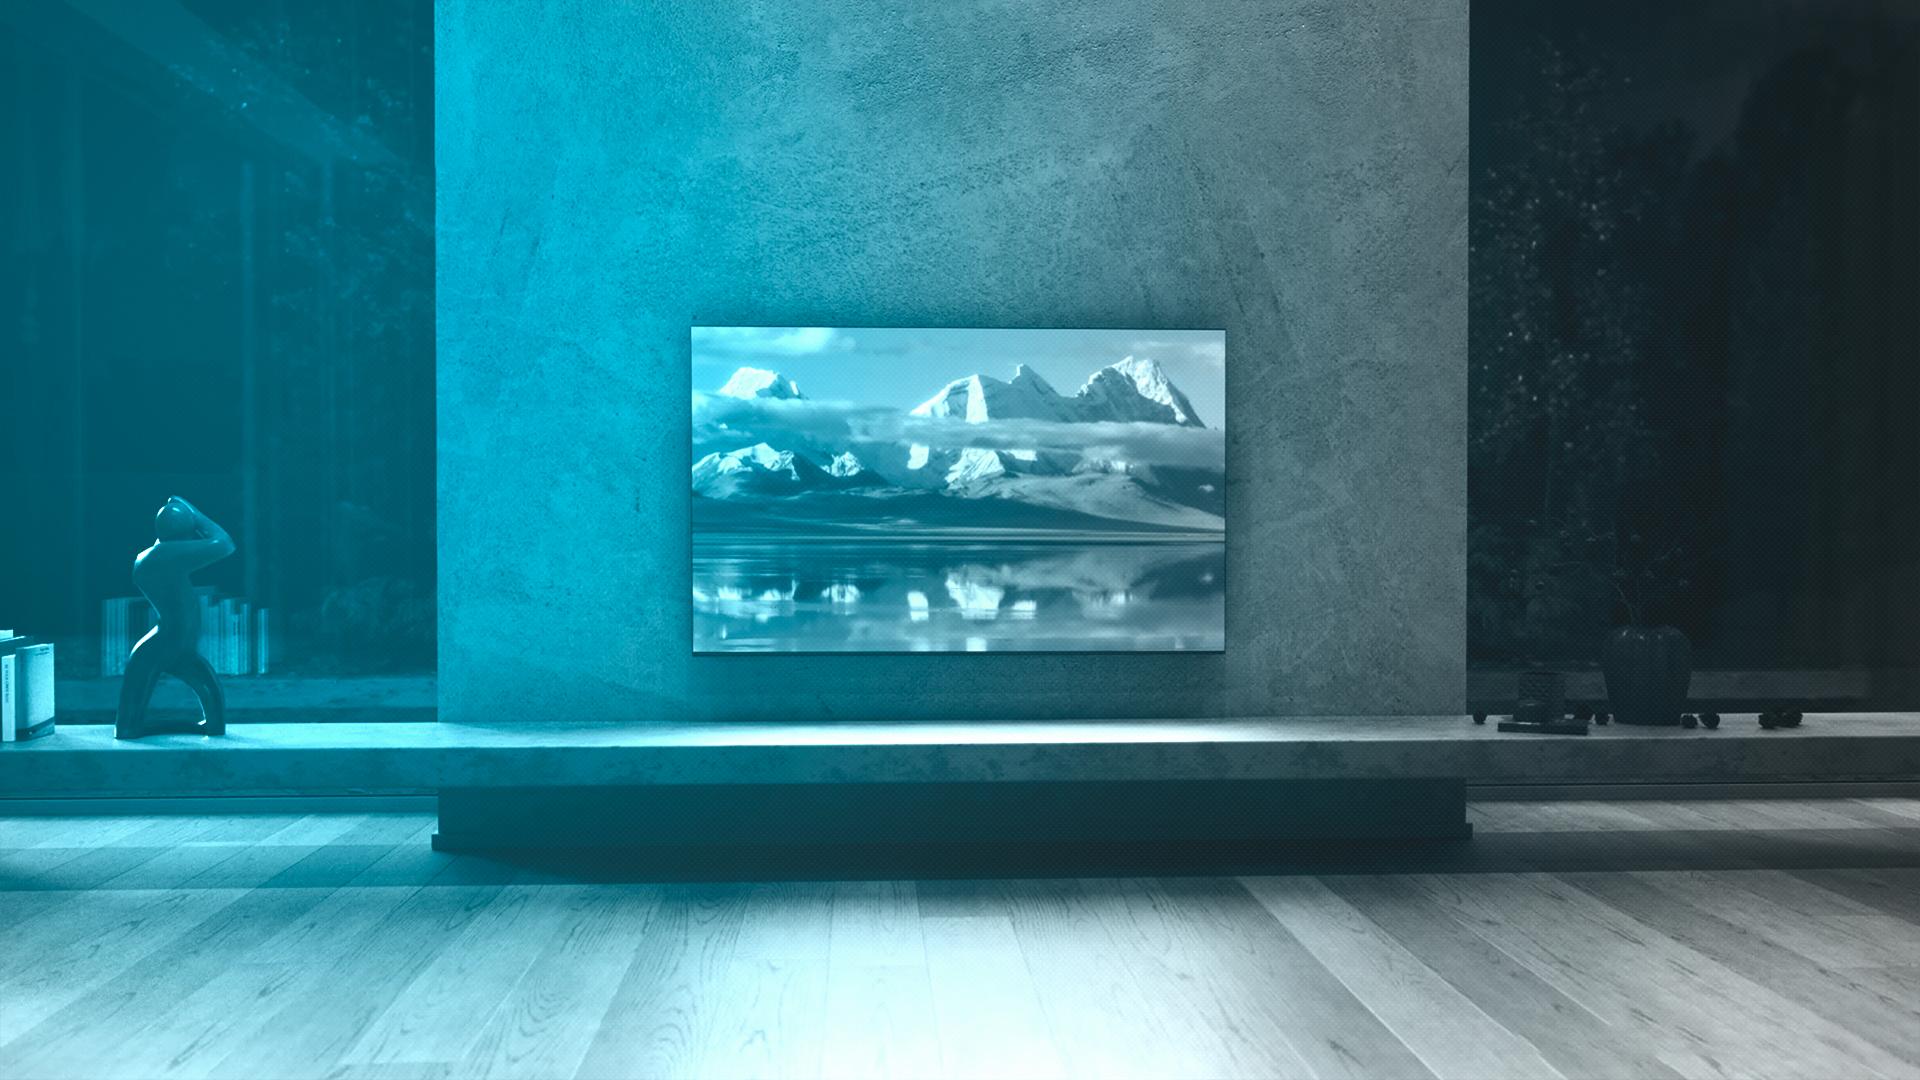 Cecotec amplía su gama Smart TV con dos modelos XLCecotec amplía su gama  Smart TV con dos modelos XL - Marrón y Blanco